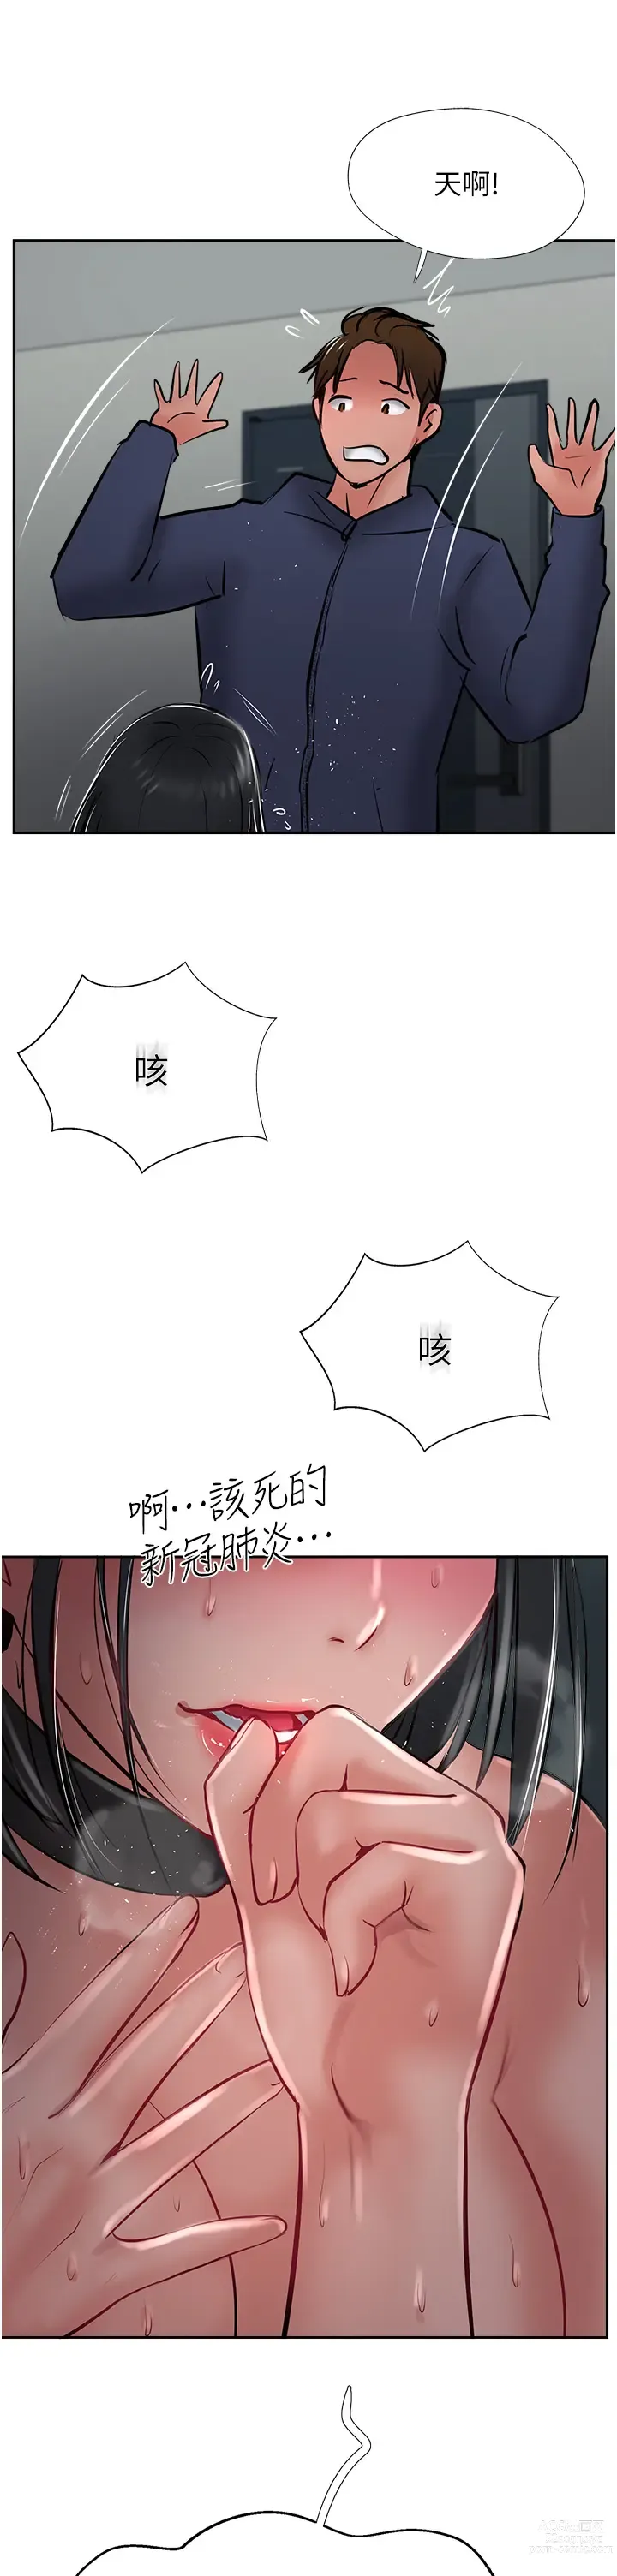 Page 1484 of manga 攻顶传教士 1-31 中文无水印